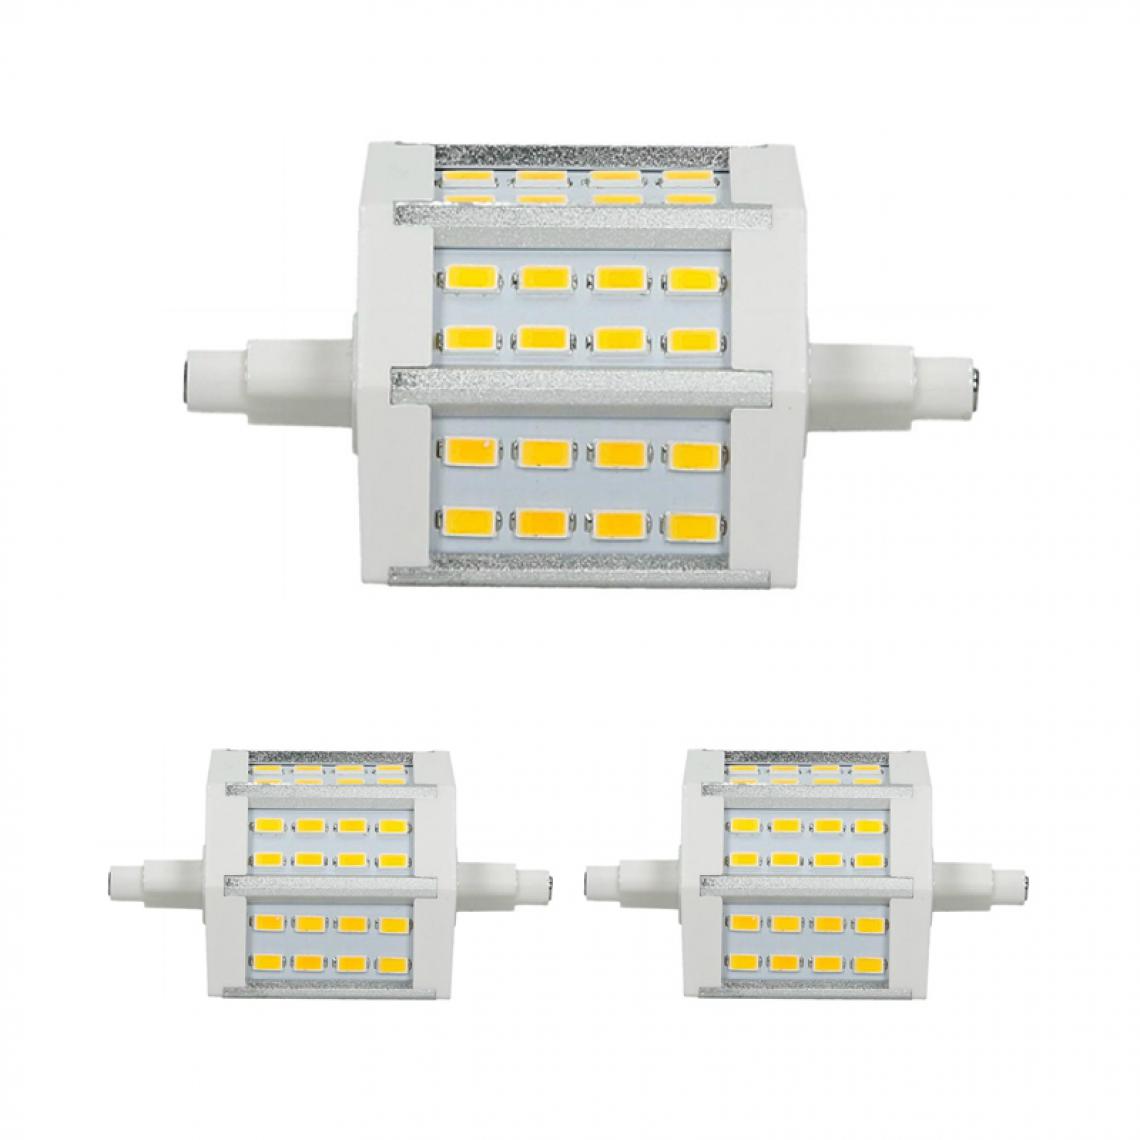 Ecd Germany - ECD Germany 2 x R7S Lampes LED 5W 78mm 360 lumens SMD5730 AC 220-240 angle de faisceau 180 ° remplace 35W Ampoule halogène Blanc Chaud réglable - Tubes et néons